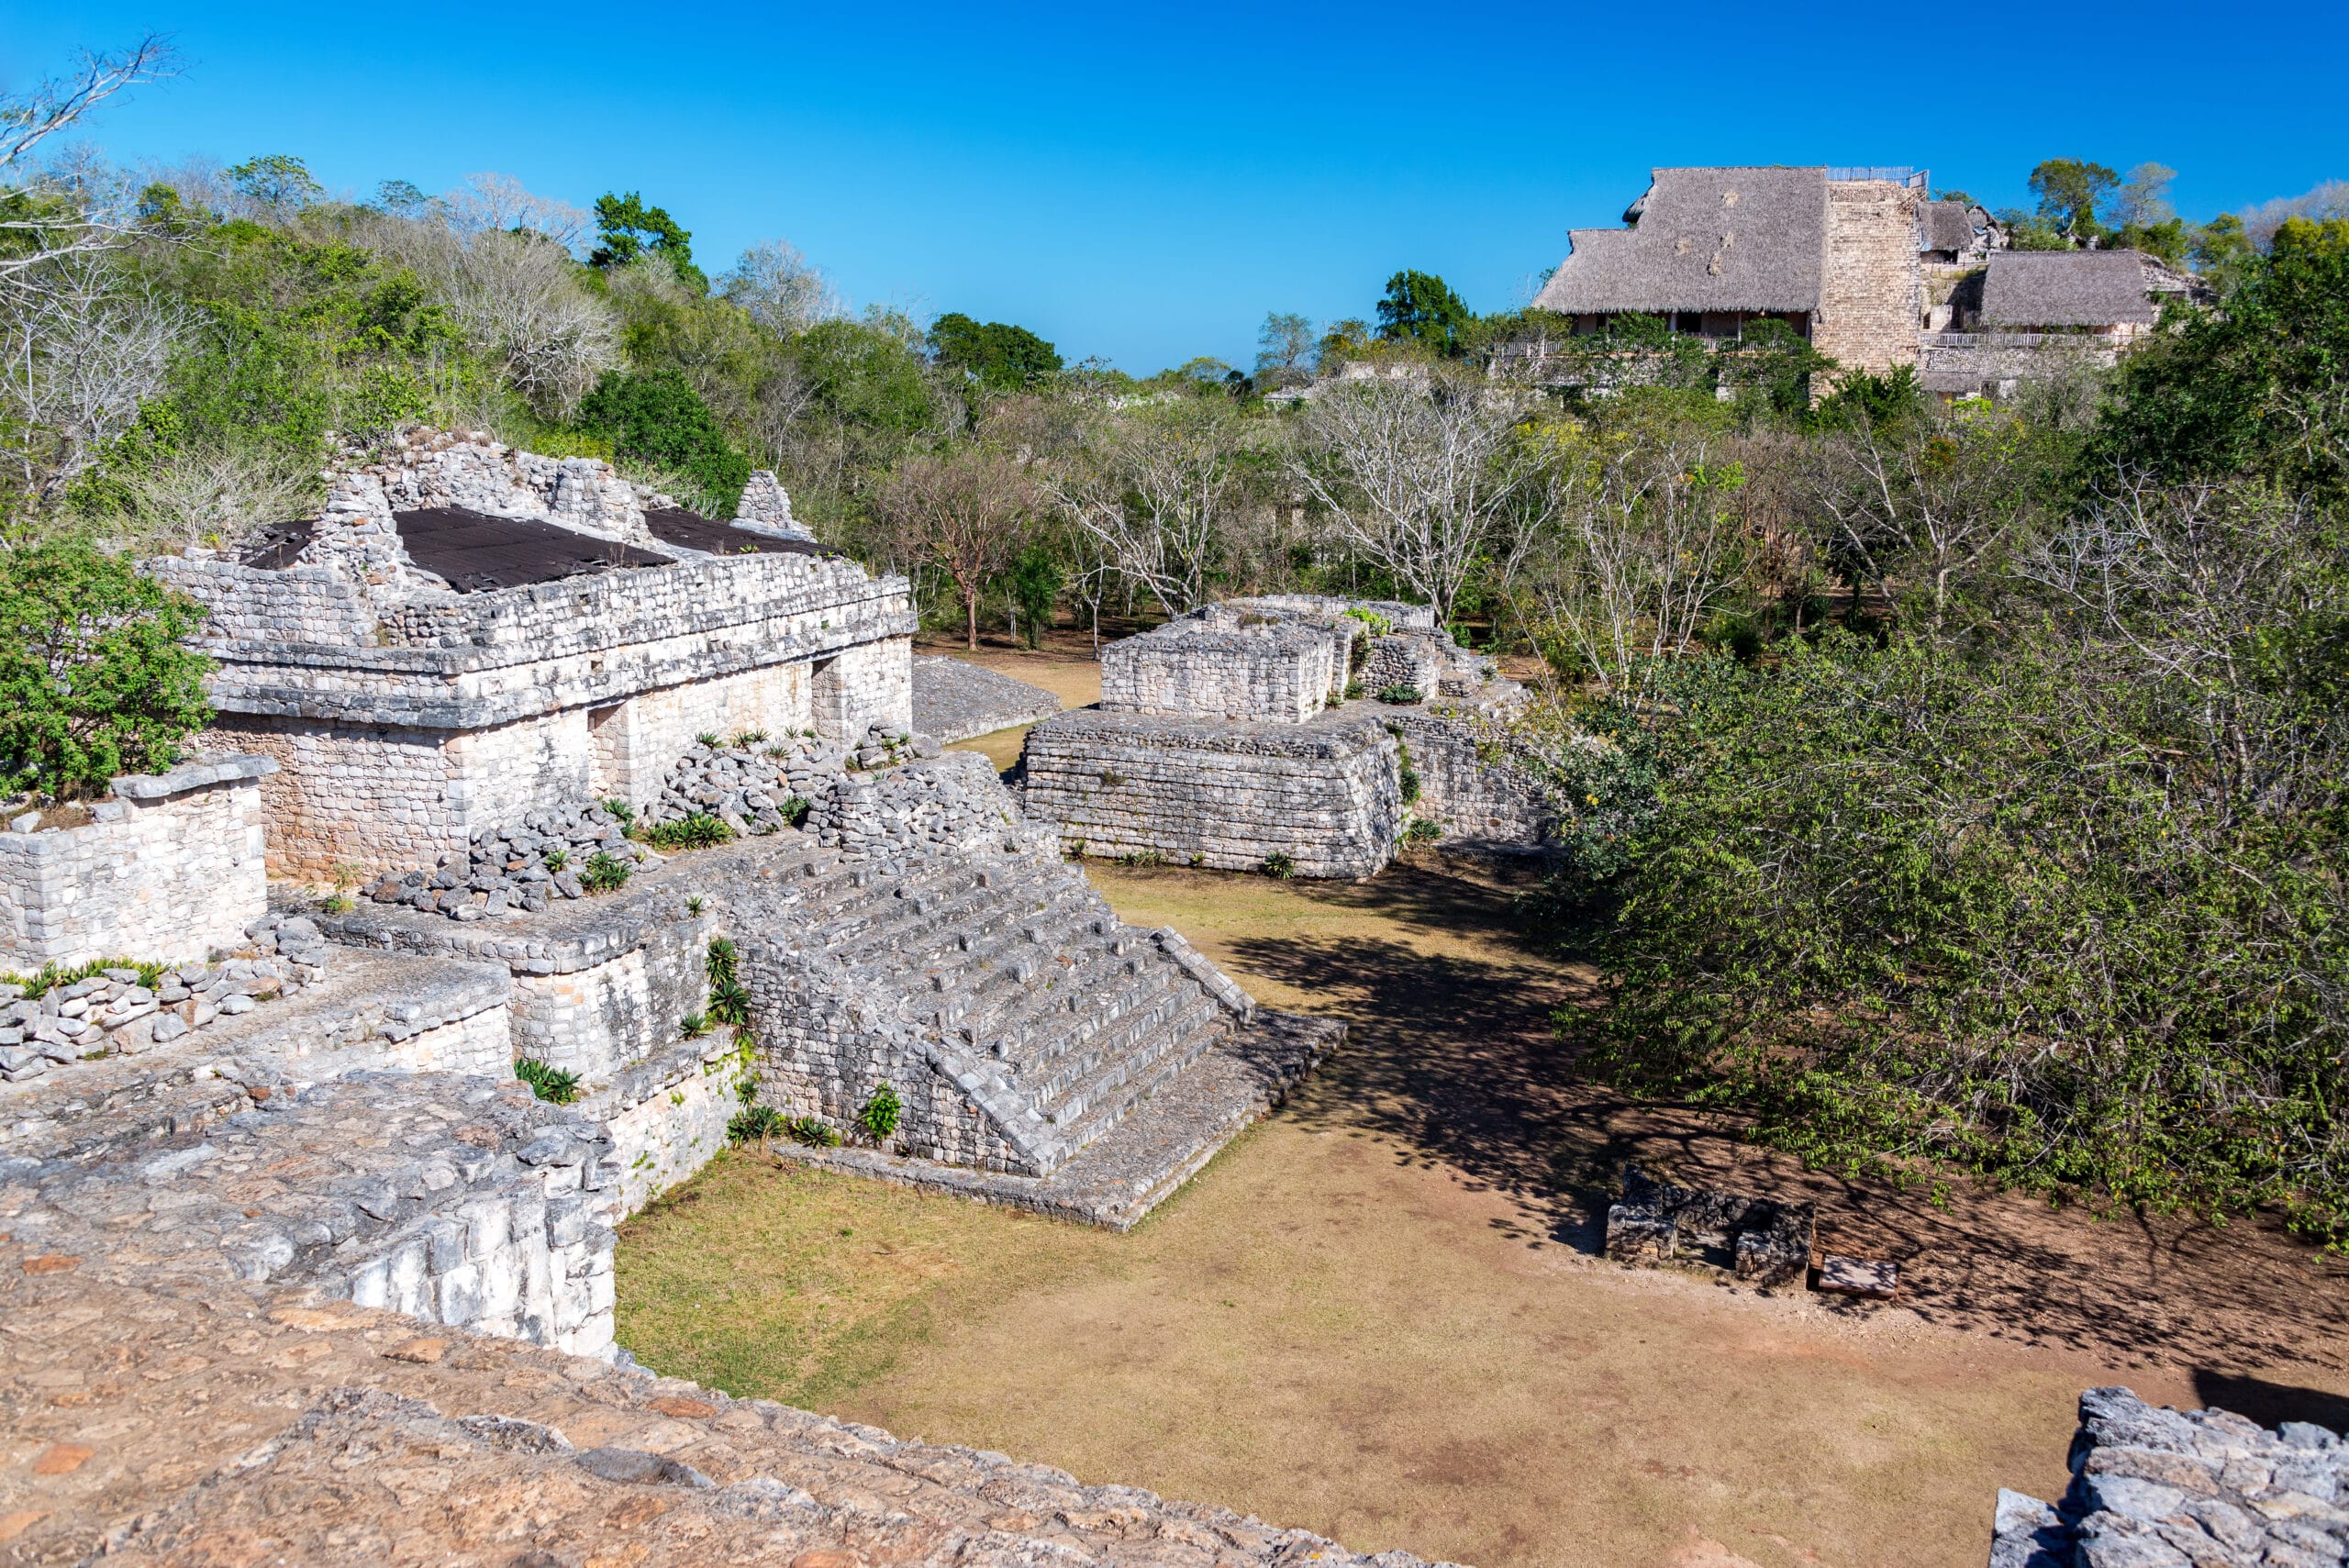 Die Maya Ruinen von Ek Balam befinden sich mitten im Dschungel